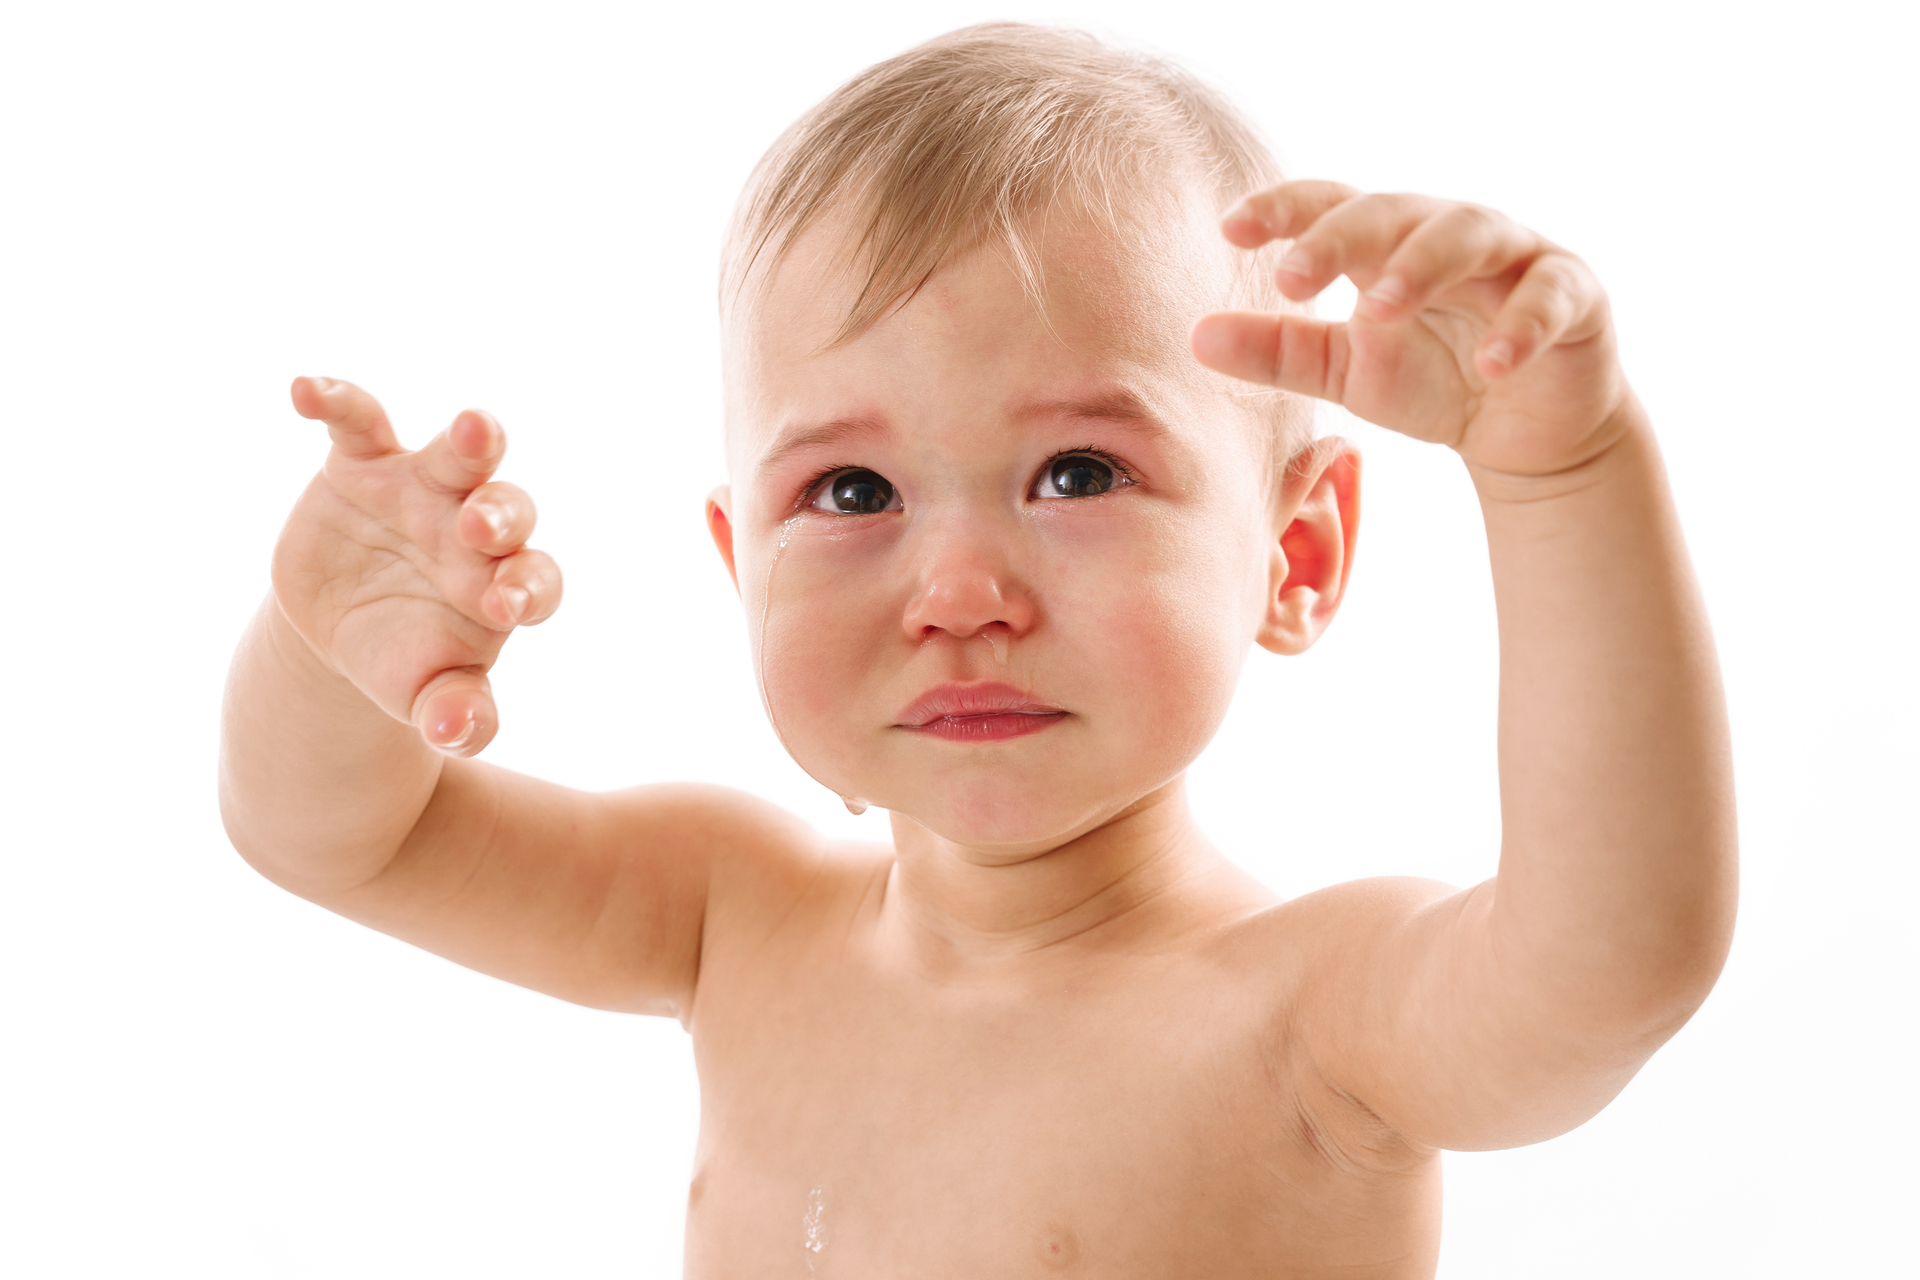 Na obrazku widać niemowlaka, którego delikatna skóra pod pachami jest dotknięta odparzeniami, co powoduje mu dyskomfort i łzy w oczach. Jego małe, smutne oczy odzwierciedlają ból i frustrację, jakie odczuwa. W tle widać opiekuna, który starannie stara się złagodzić dolegliwości malucha, szukając odpowiednich środków pielęgnacyjnych i pocieszając go